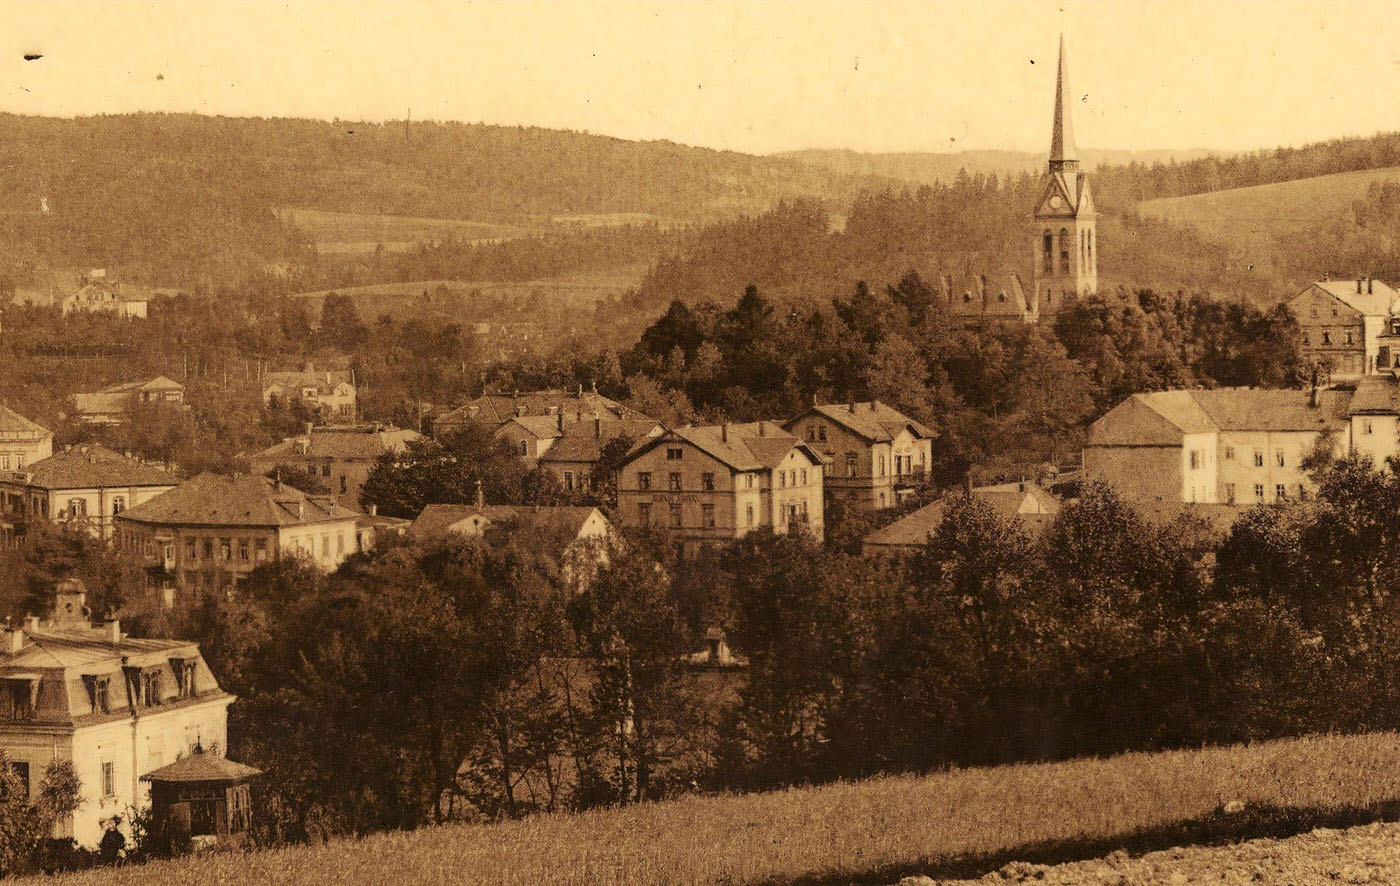 Views of Bad Elster, Vogtlandkreis, 1900s, Germany.